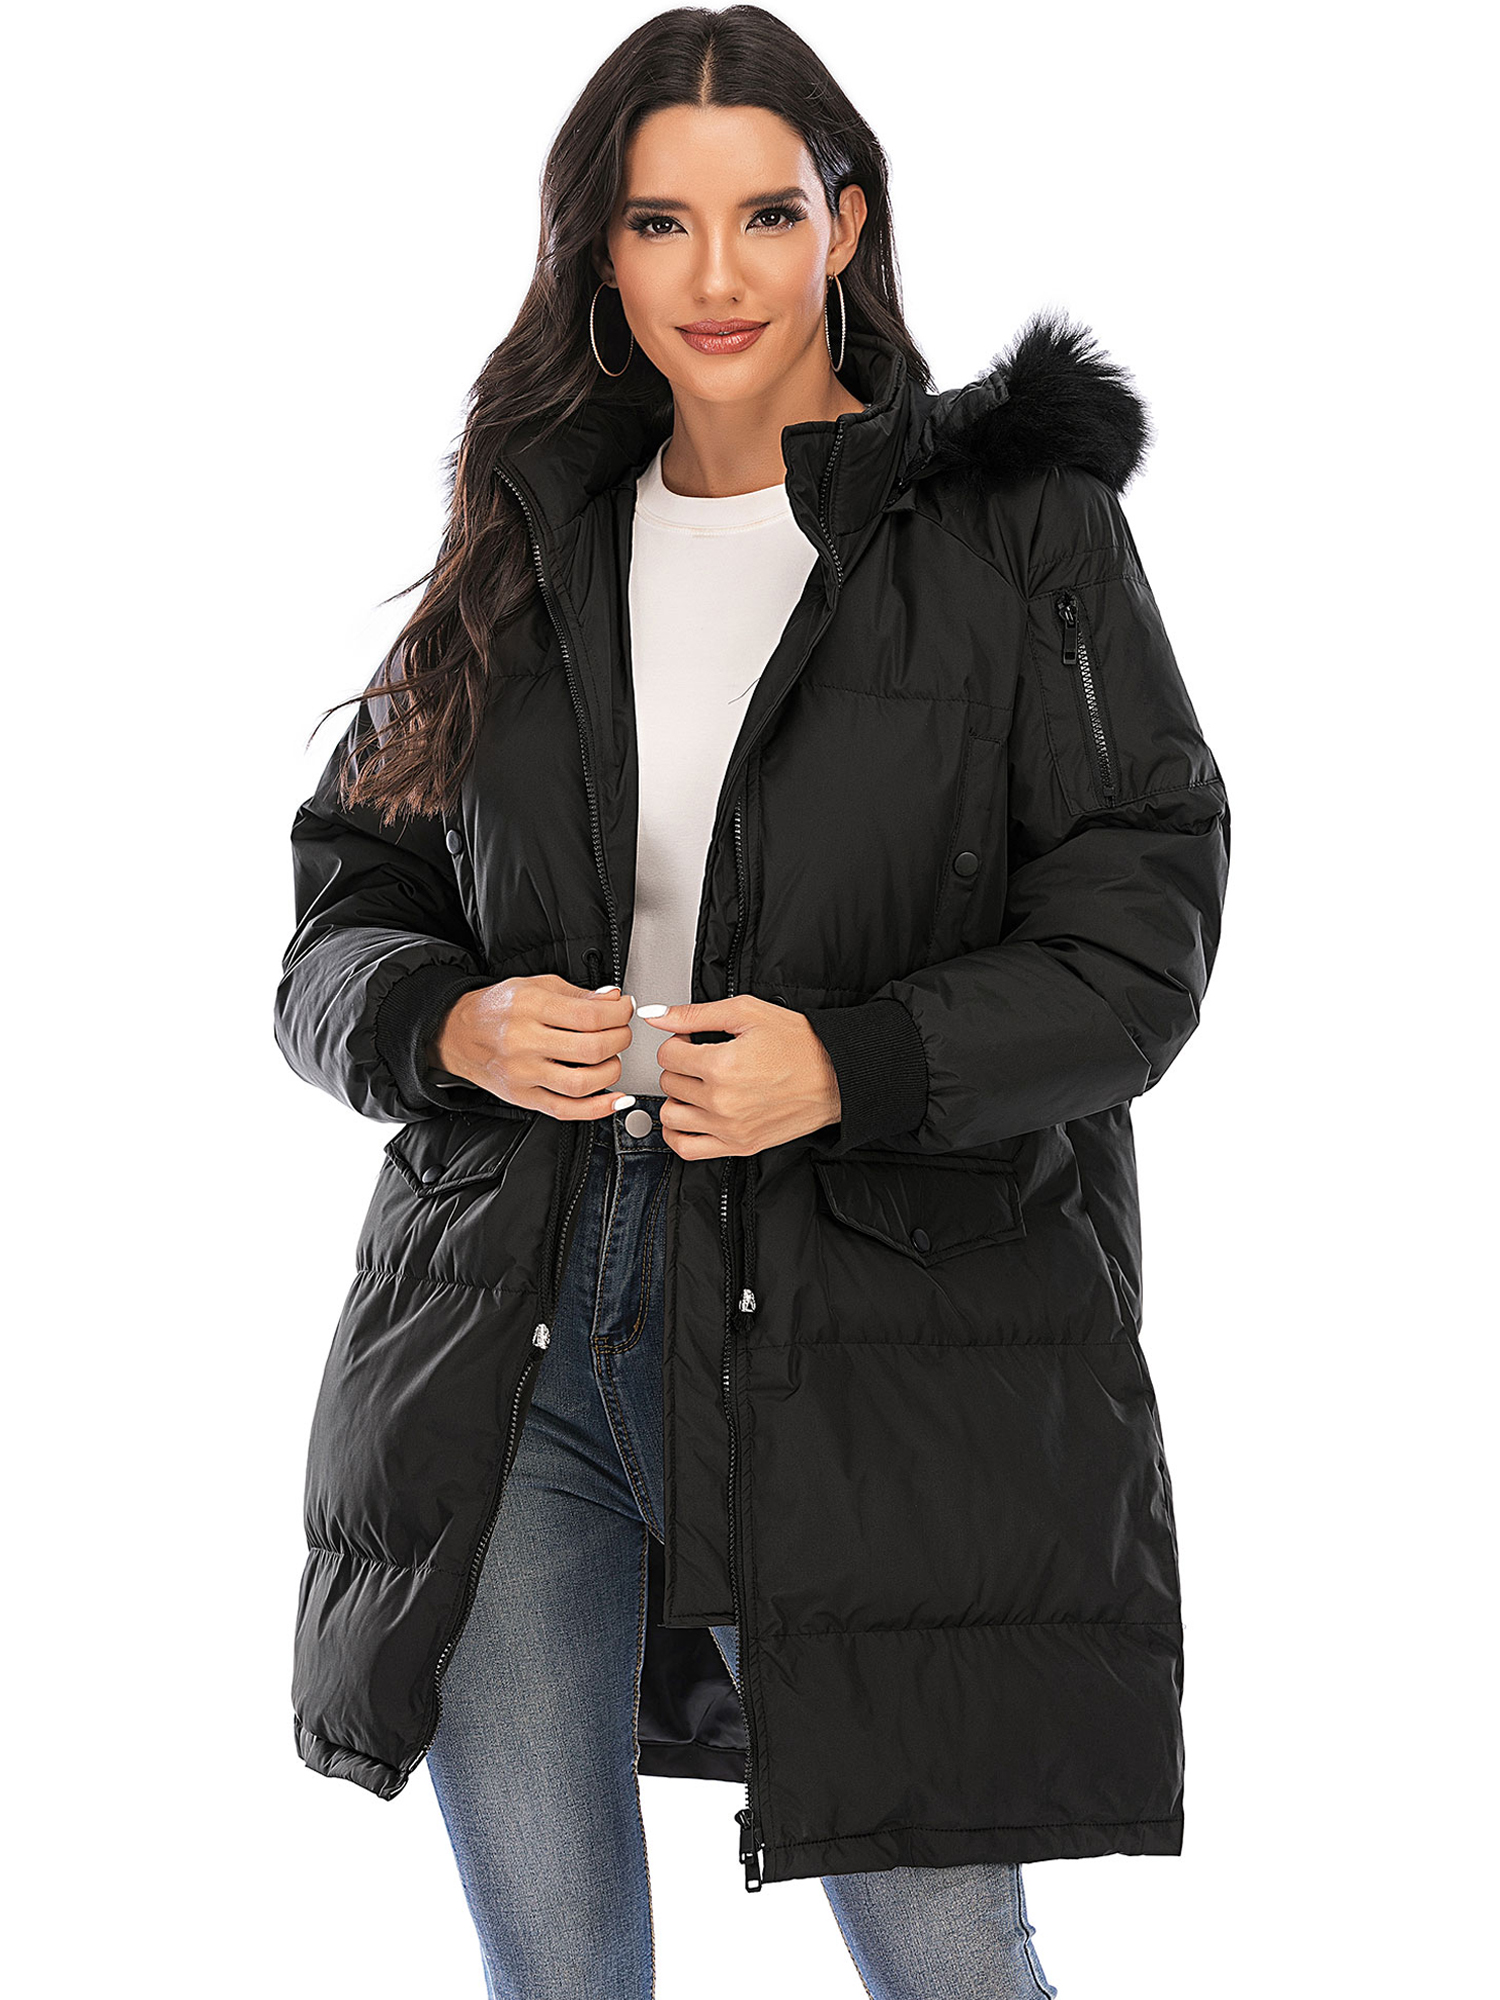 LELINTA Women Winter Plus Size Long Hoodie Coat Warm Hooded Jacket Zip Parka Overcoats Raincoat Active Outdoor Trench Coat - image 1 of 7